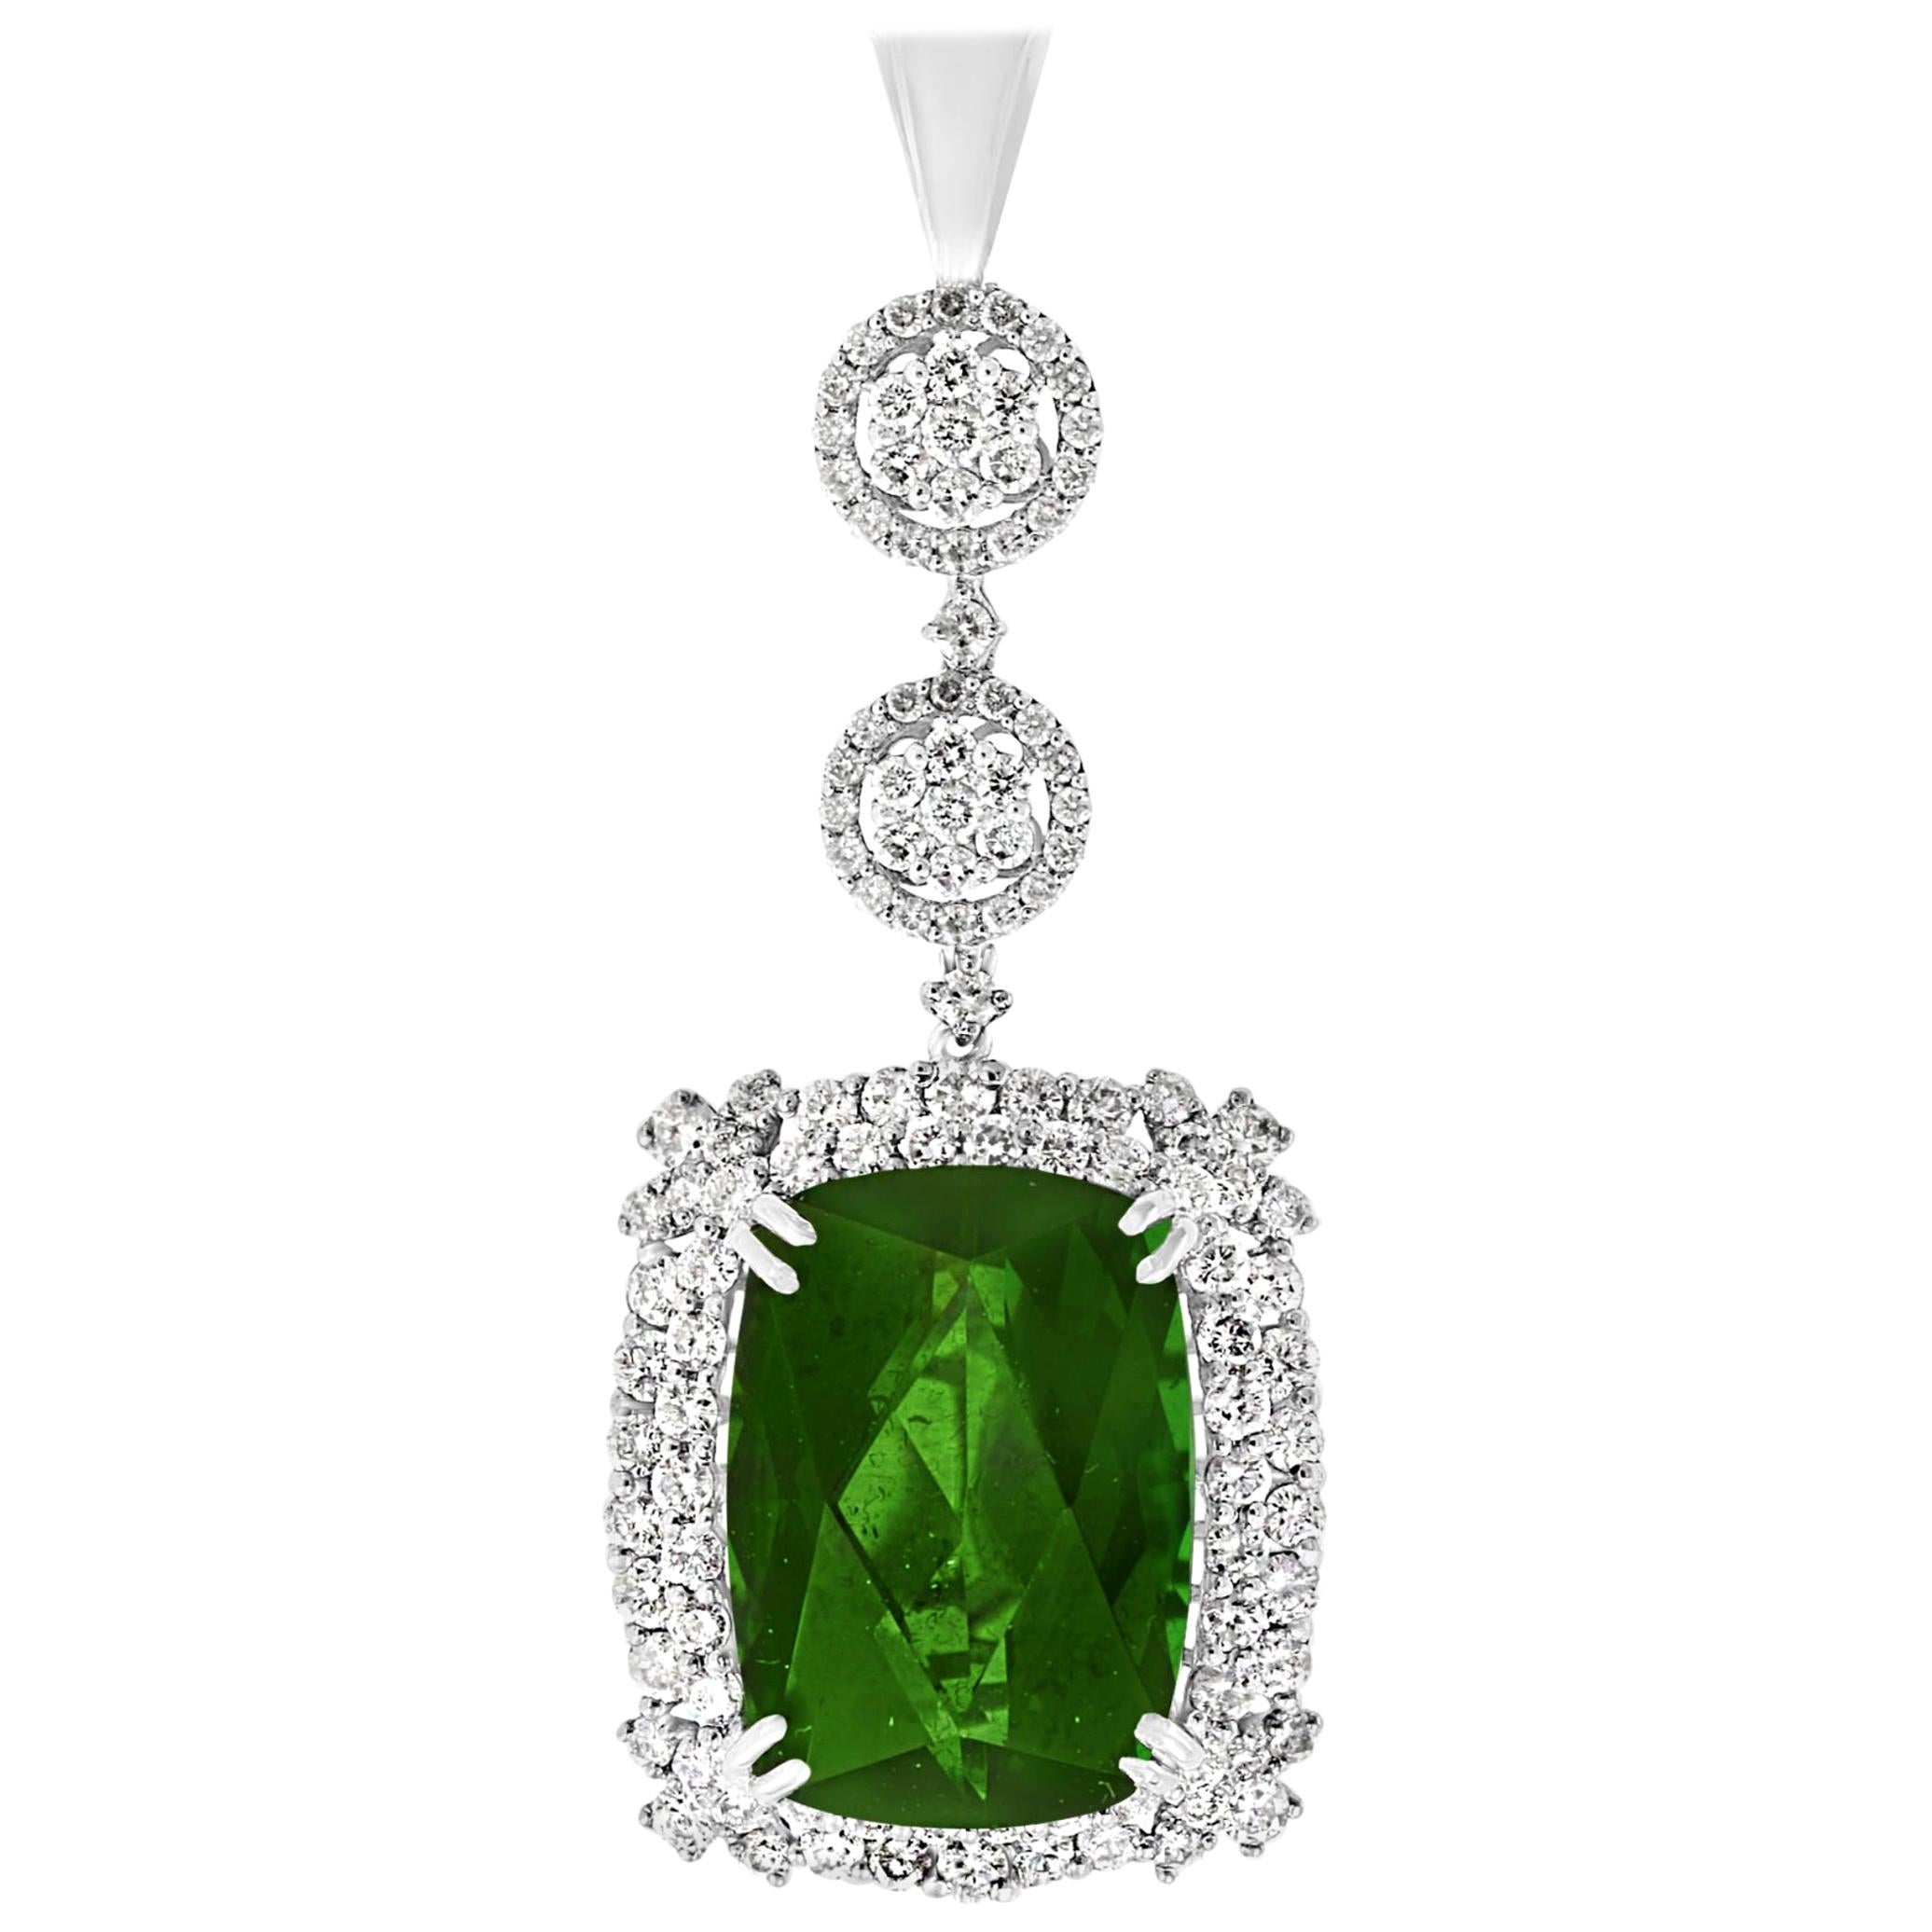 17 Karat Grüner Turmalin und 4 Karat Diamant-Anhänger / Halskette 14 Karat Gold